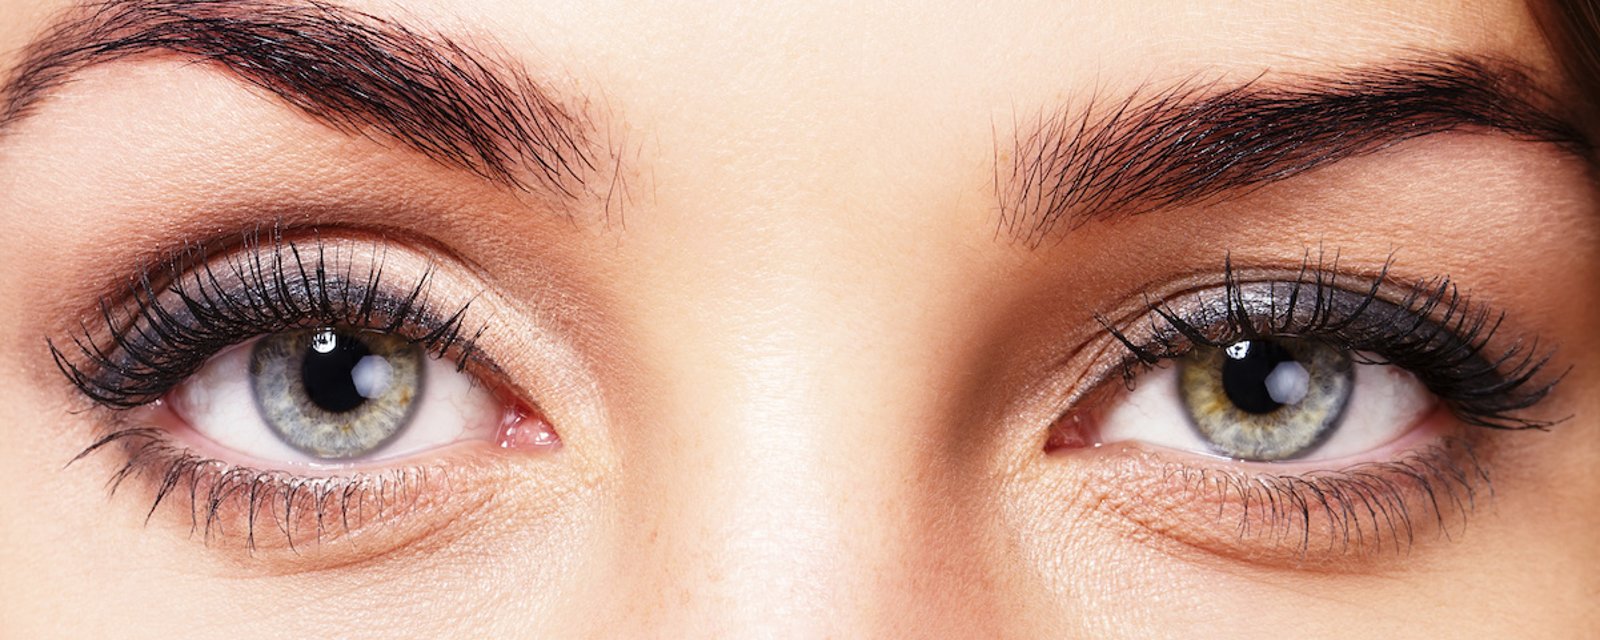 8 choses que vos yeux peuvent vous révéler sur votre santé